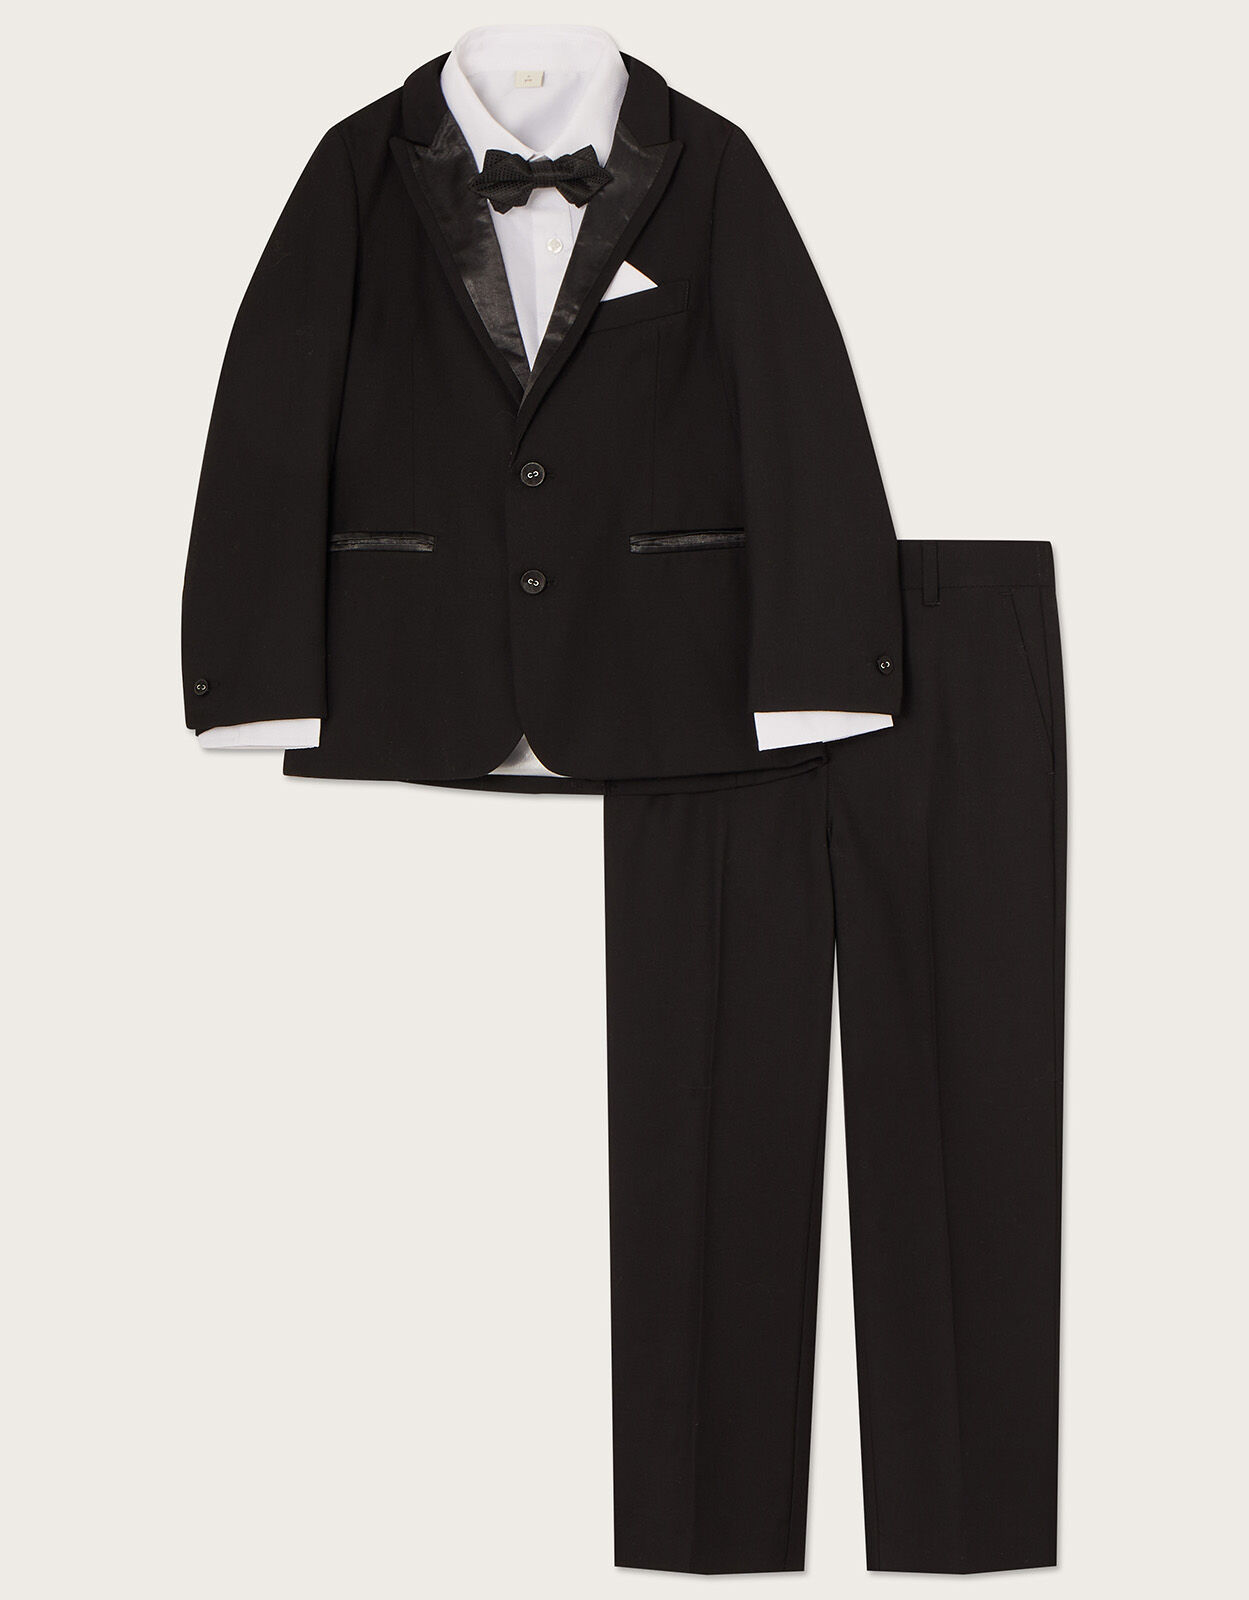 Boy's Tuxedo Suits Wedding Outfit Suit Kids Suit Set Formal Dress Clothes  Green for Boys Size 12 - Walmart.com